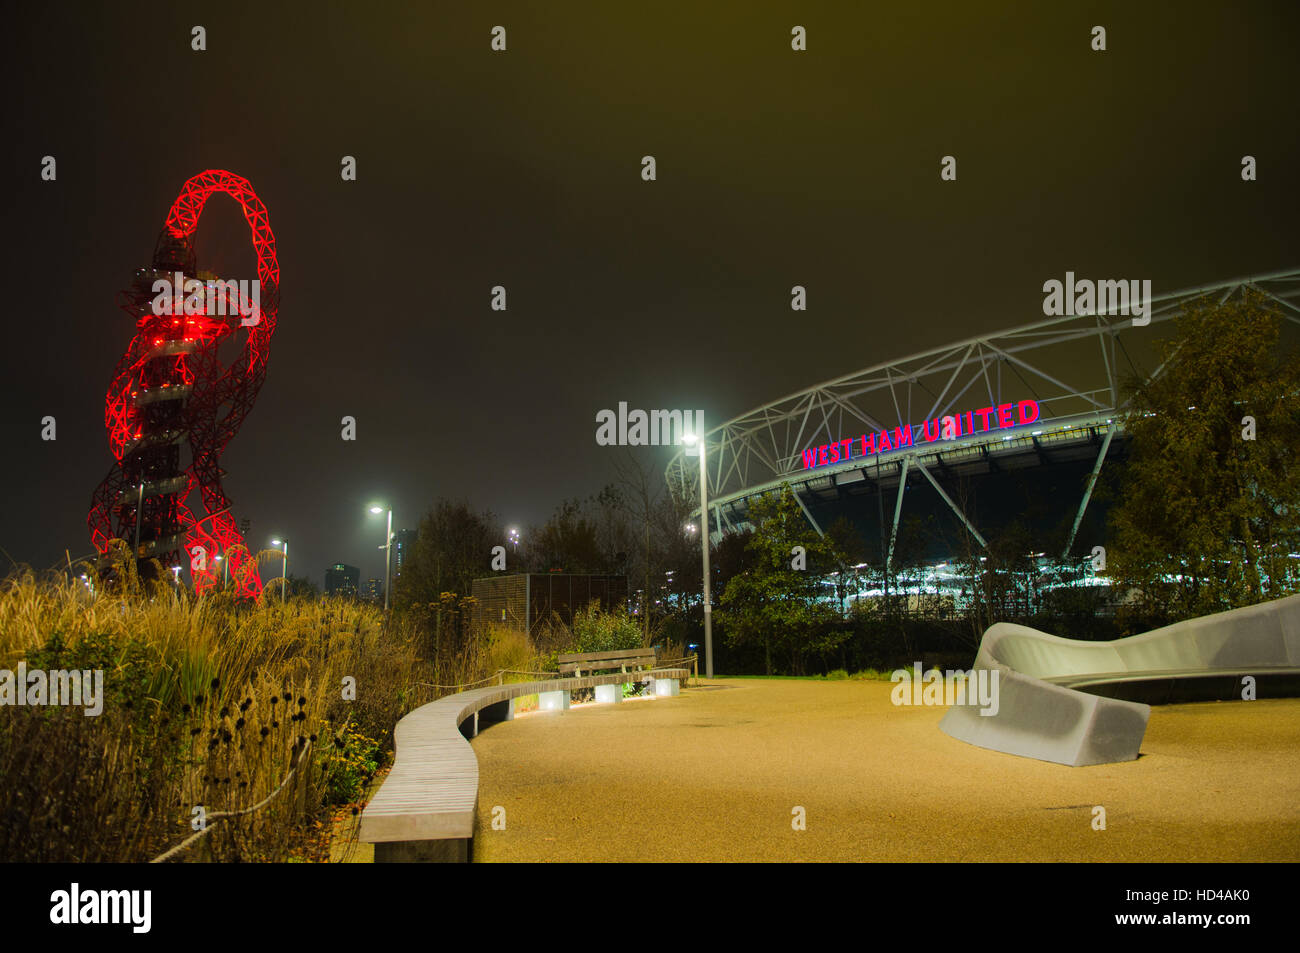 Queen Elizabeth Olympic Park und London Stadium. West Ham United Football Club. Orbit. Nachtaufnahmen Stockfoto